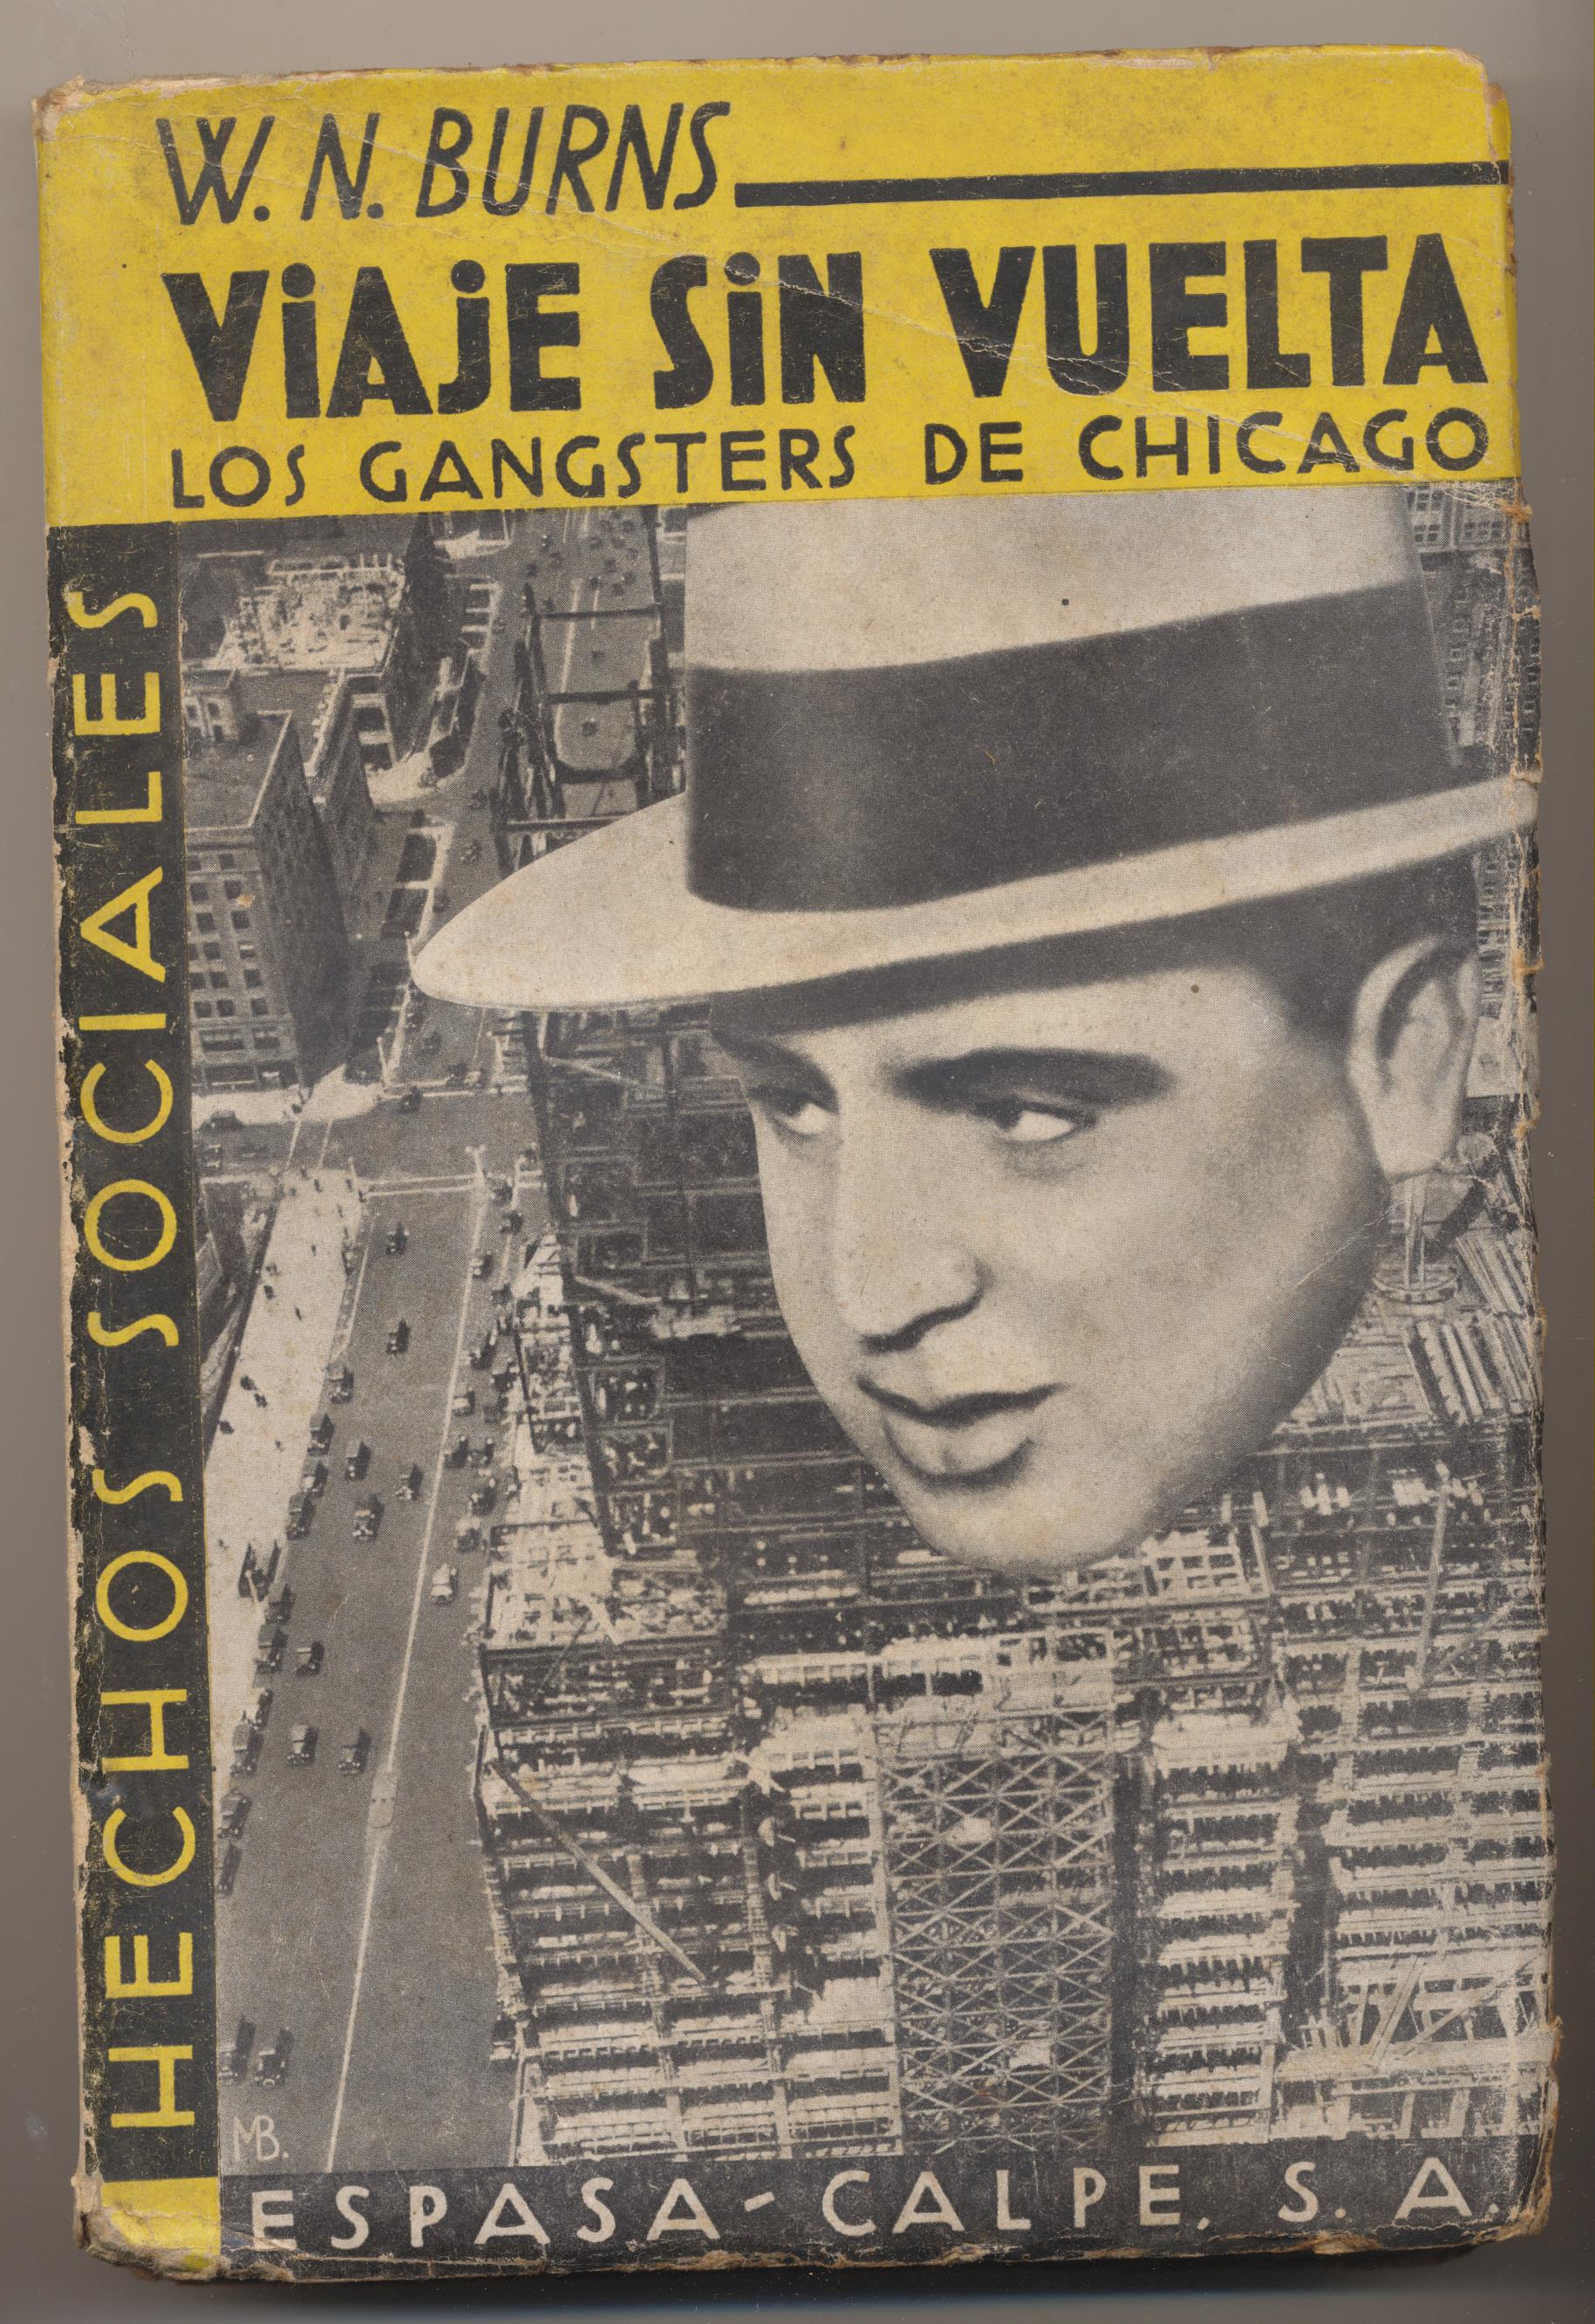 W. N. Burns. Viaje sin vuelta. Los Gangsters de Chicago. Espasa Calpe 1933. SIN ABRIR